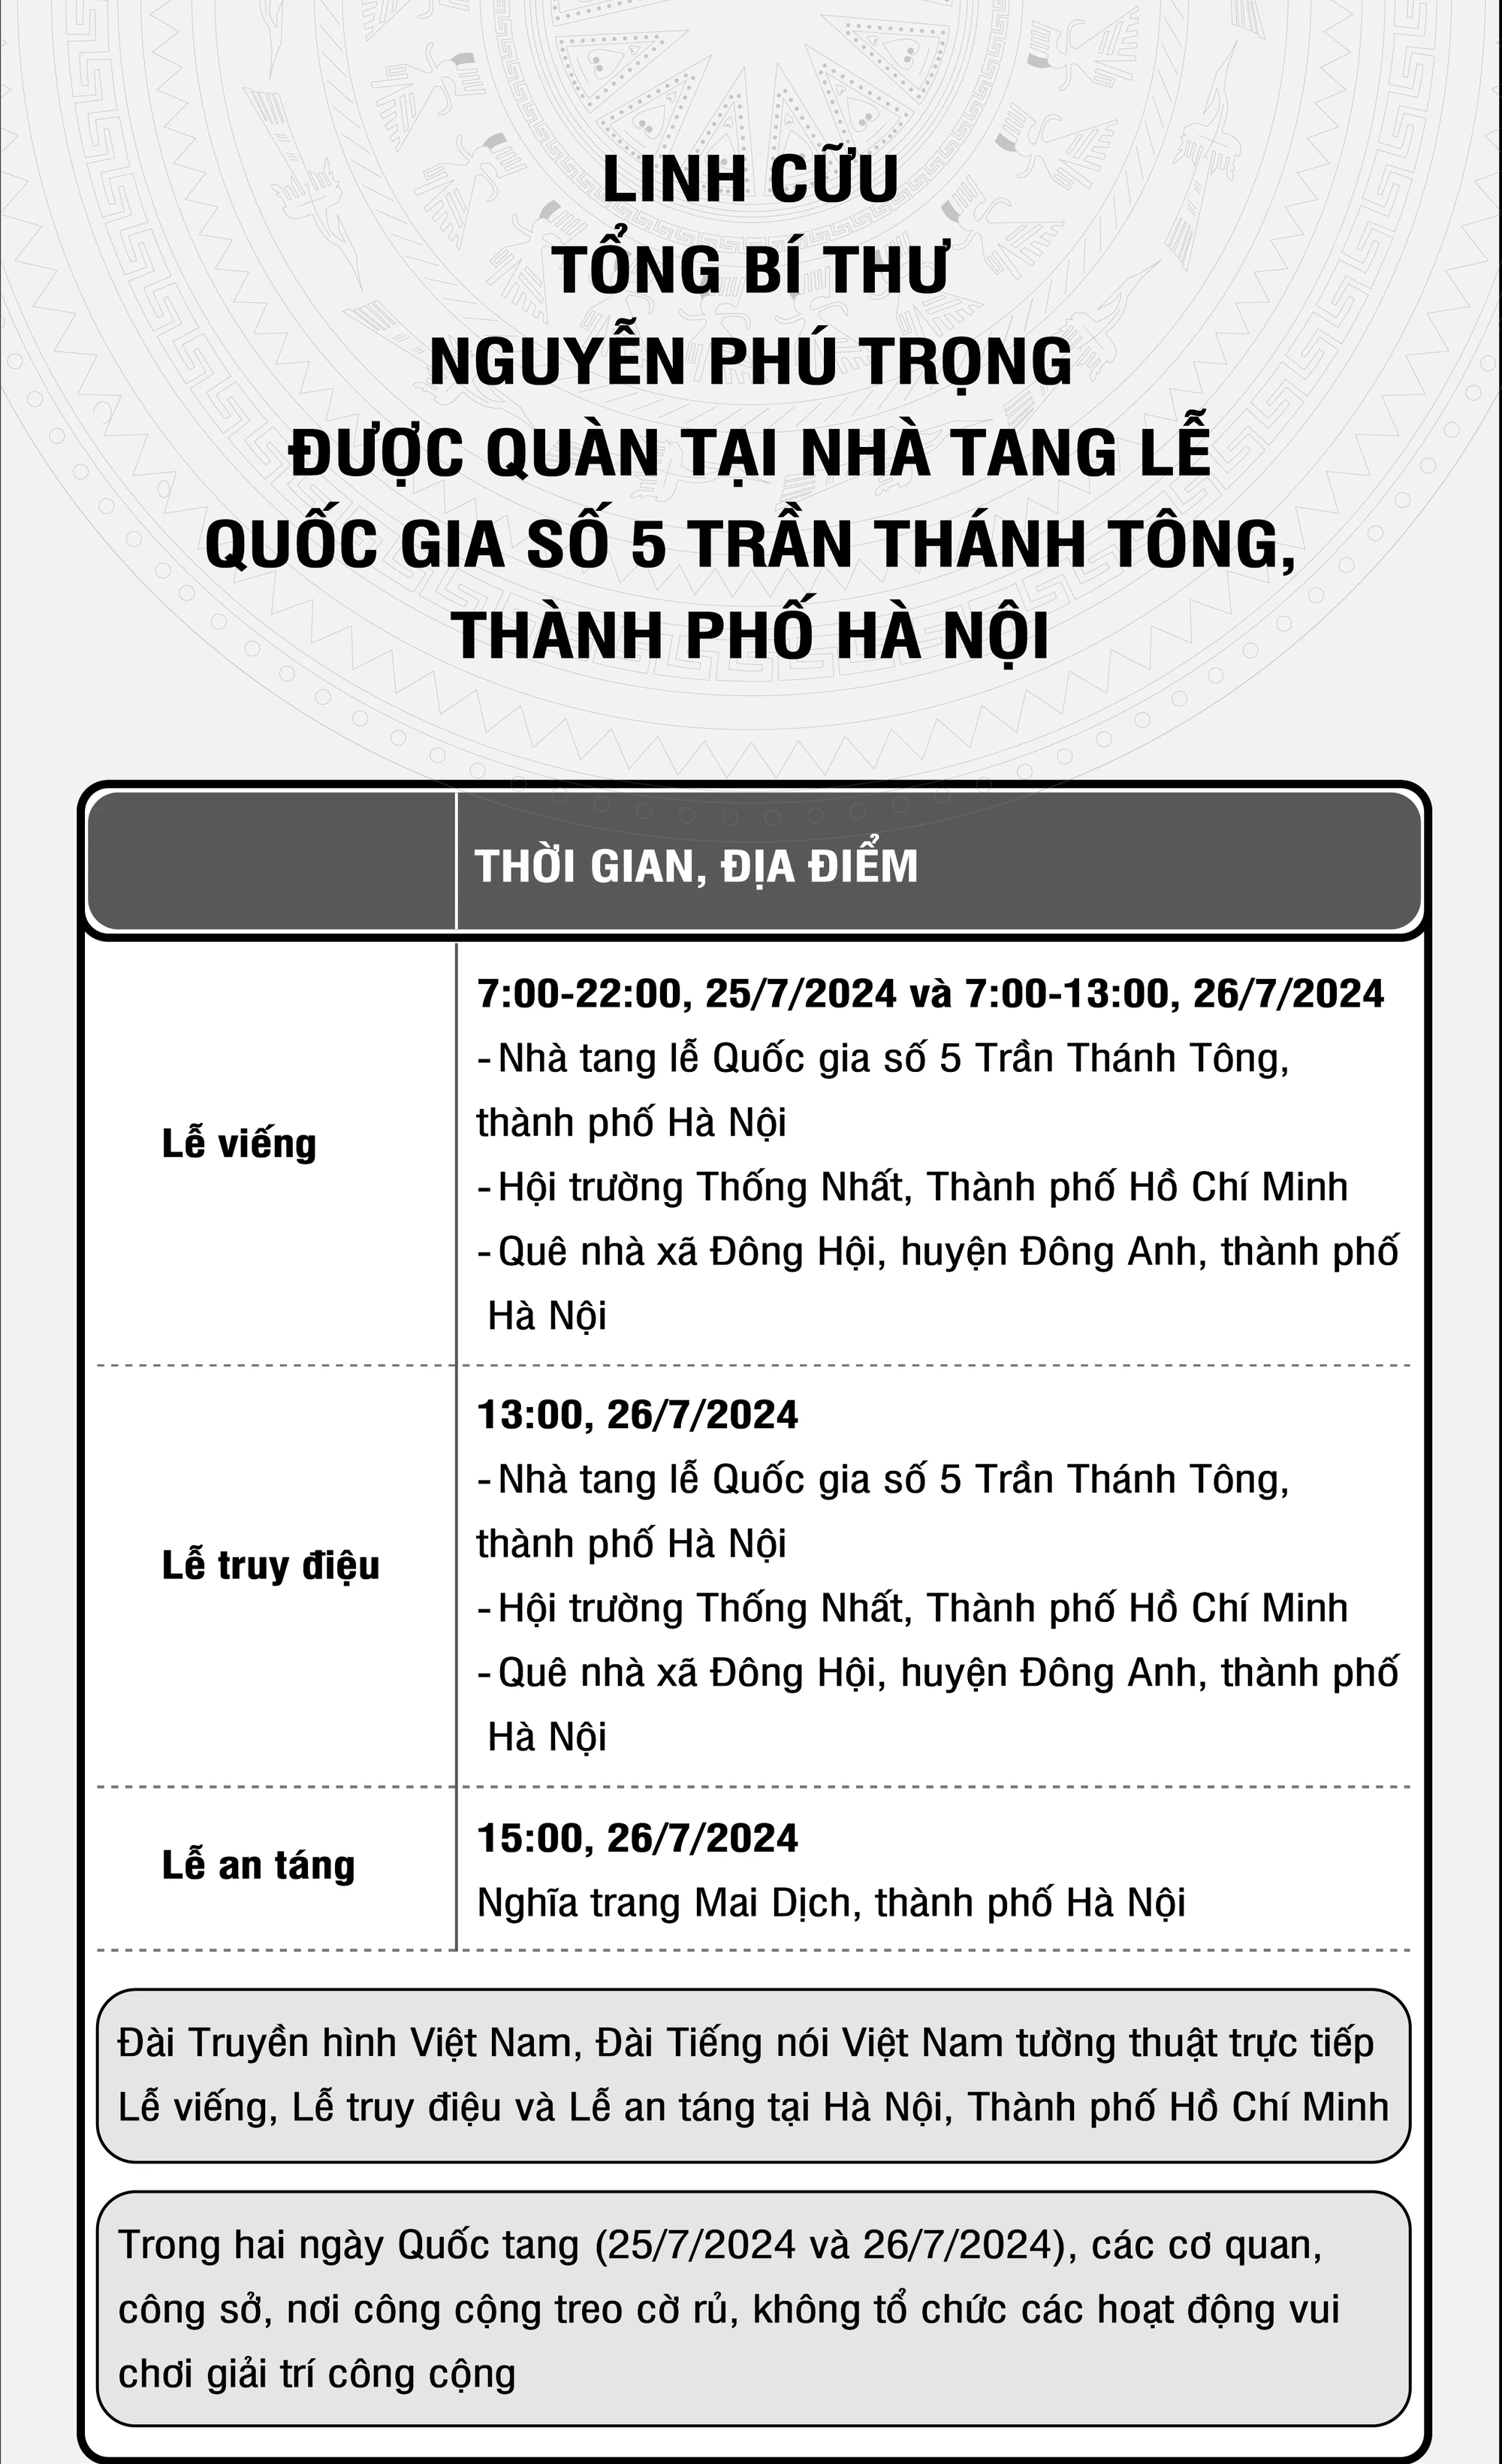 Infographic Lễ viếng Lễ truy điệu và Lễ an táng Tổng Bí thư Nguyễn Phú Trọng